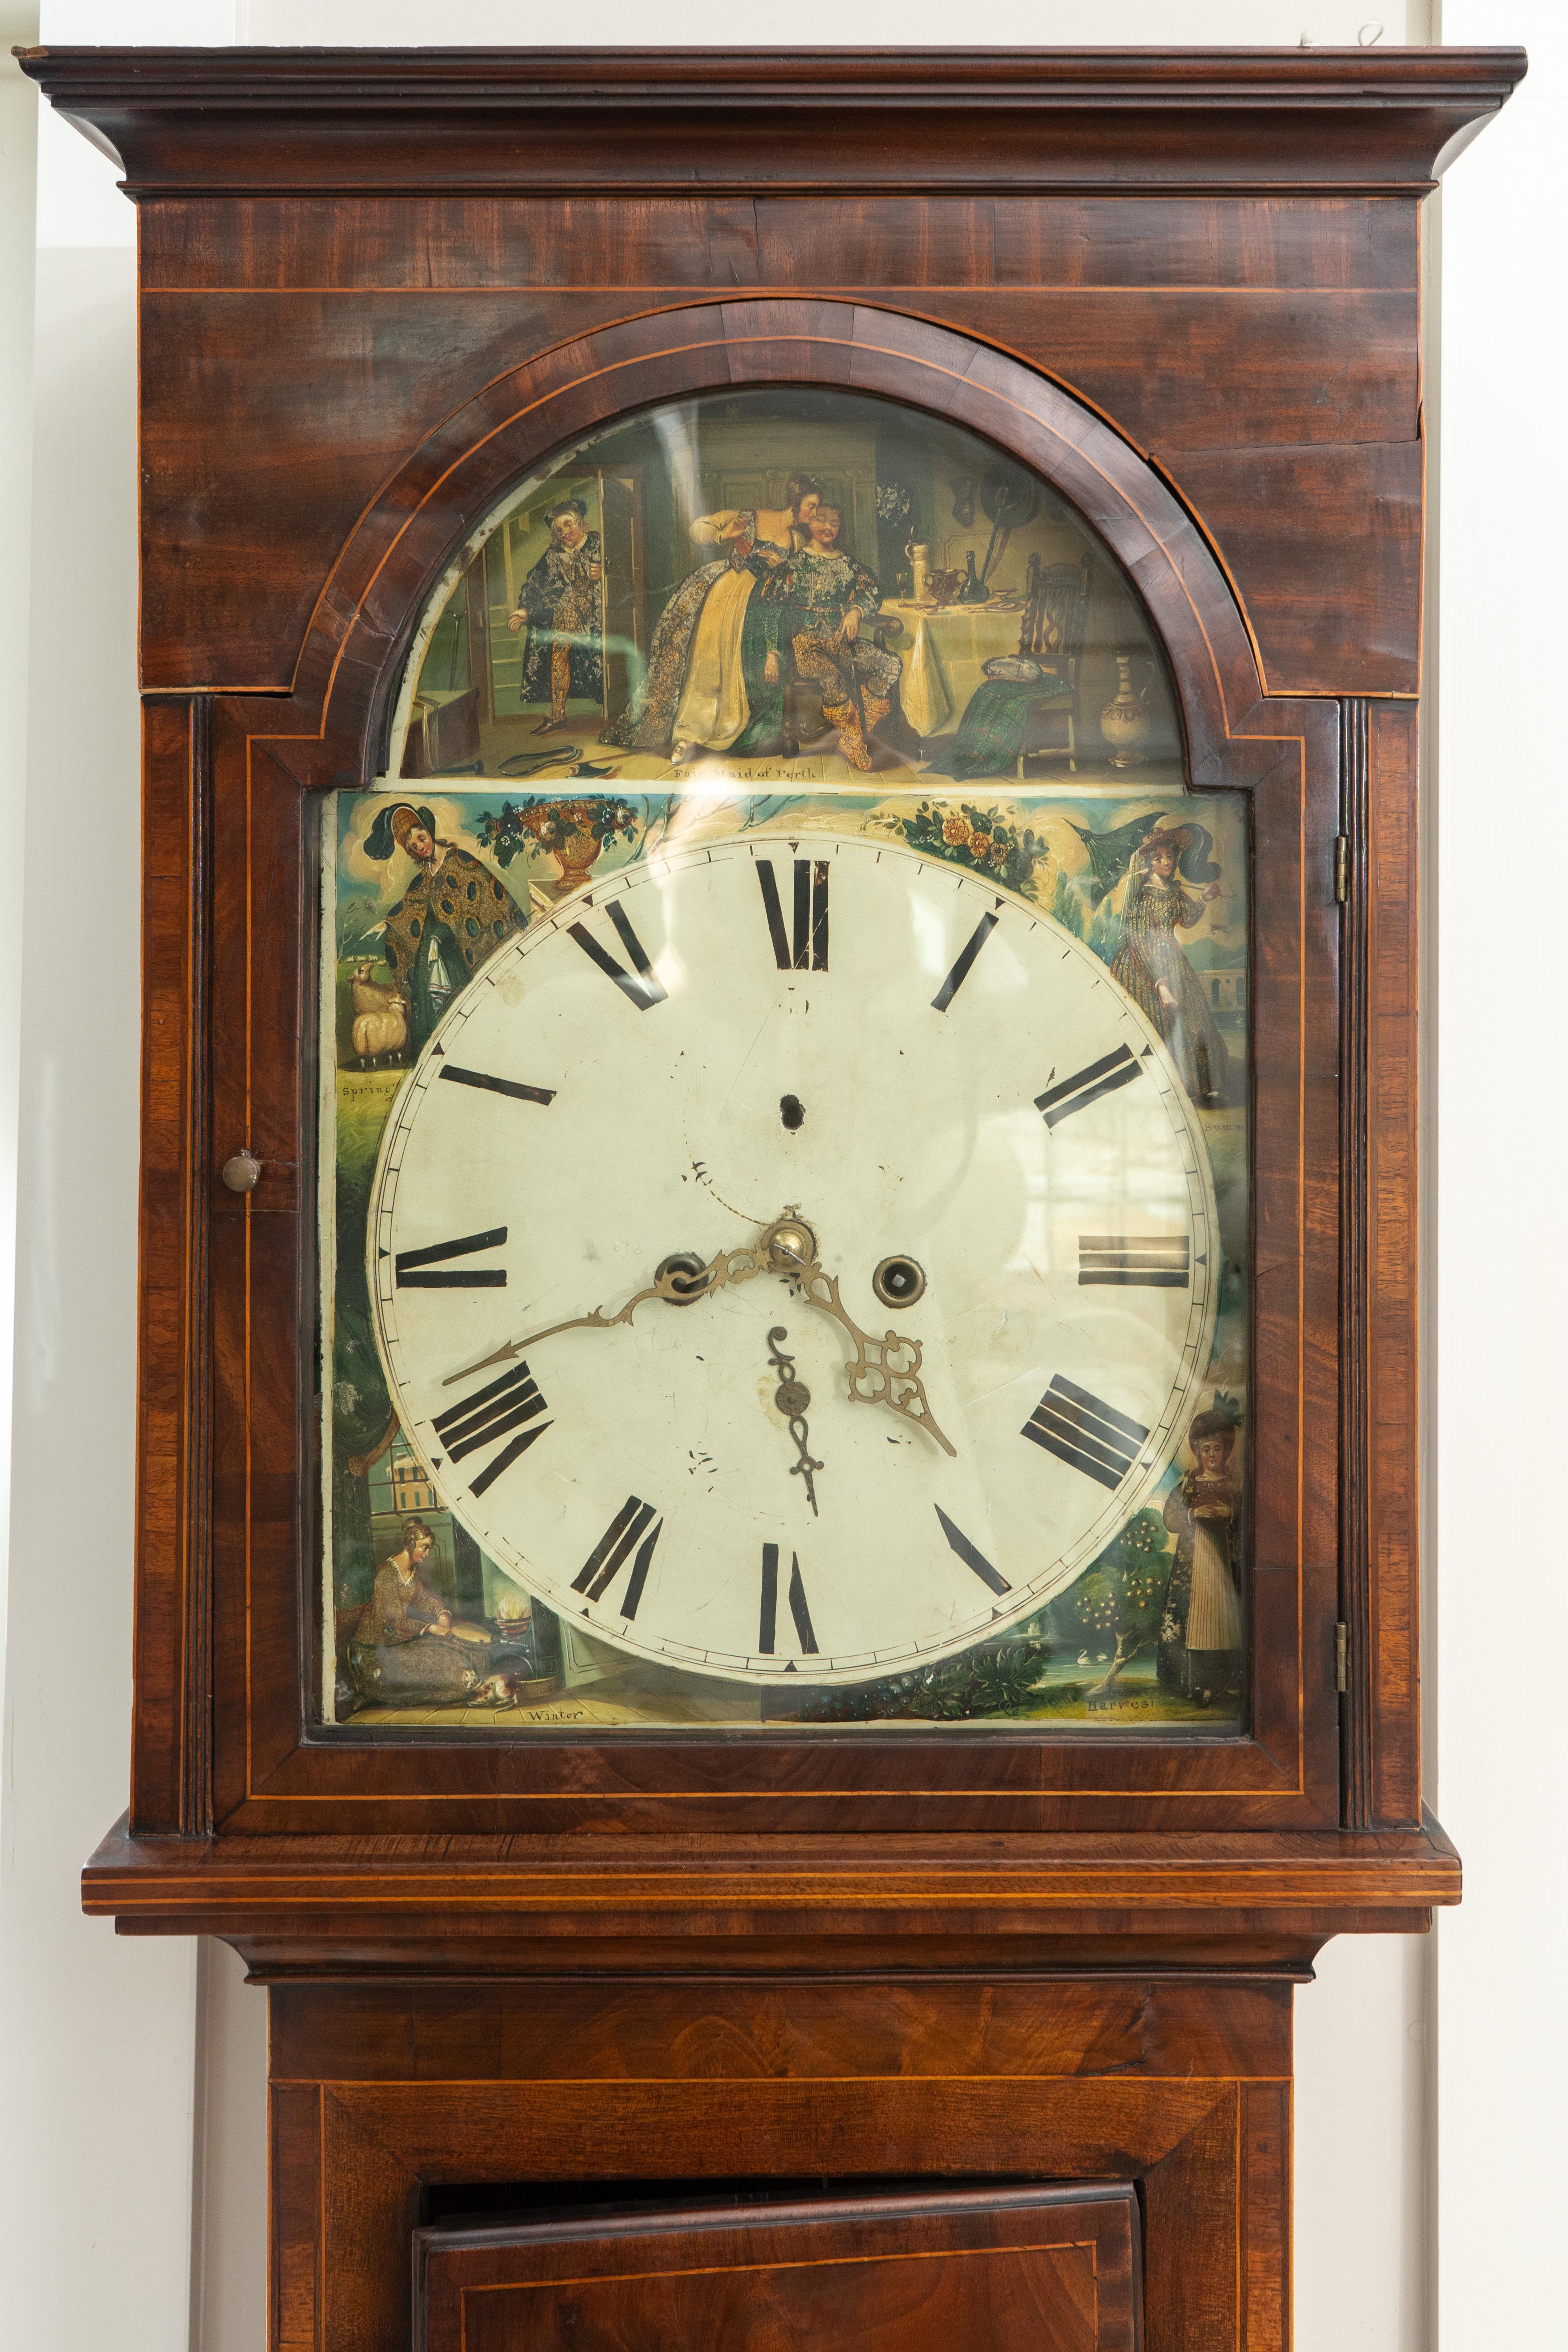 Schottische Großvateruhr:

Das Zifferblatt der Uhr ist mit Darstellungen der schönen Jungfrau von Perth in den vier Jahreszeiten bemalt.

Maßnahmen:  21